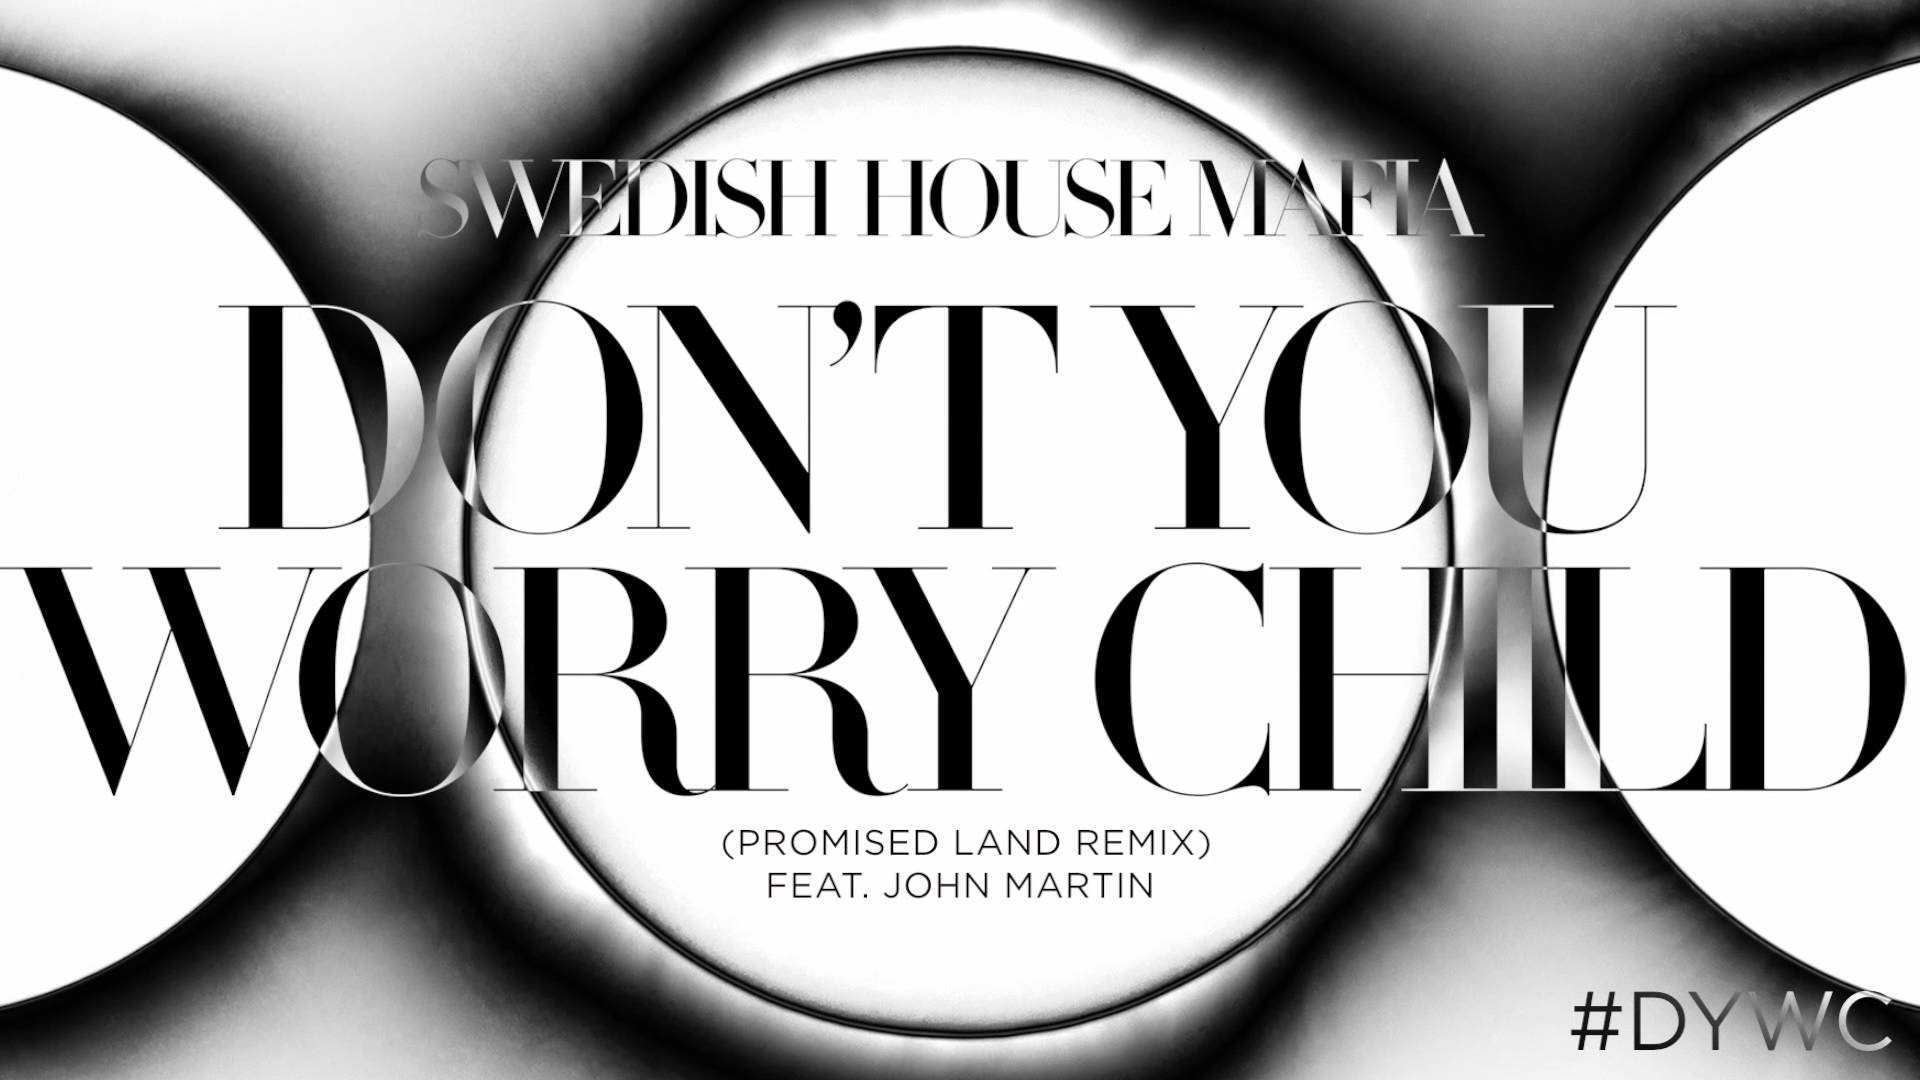 1920x1080 Swedish House Mafia - Don't You Worry Child (Promise Land Remix) - YouTube